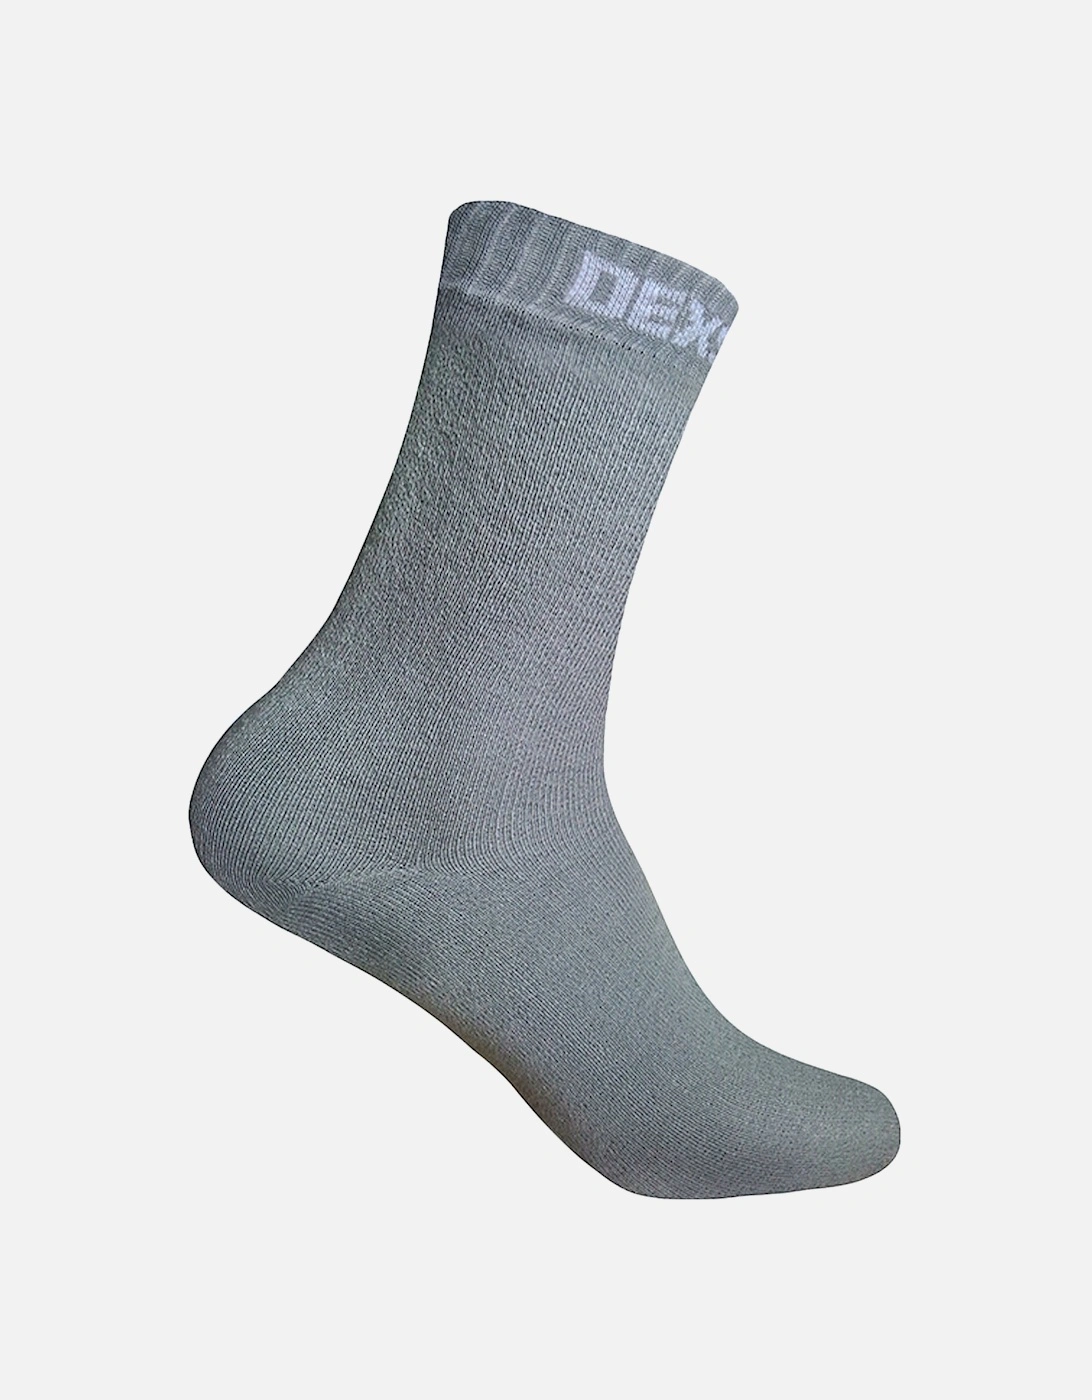 Ultra Thin Waterproof Ankle Socks - Grey, 2 of 1